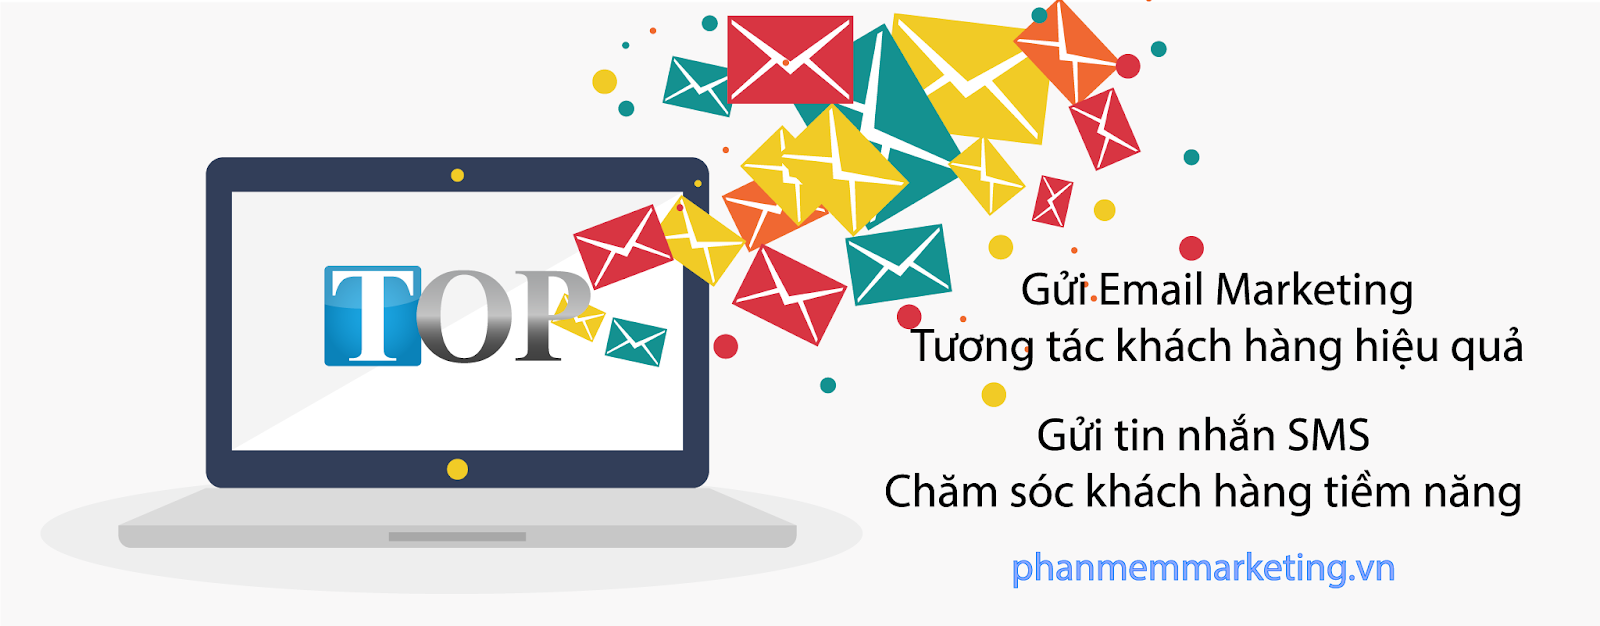 Phần mềm gửi Email | Phần mềm gửi tin nhắn sms | TOP Marketing